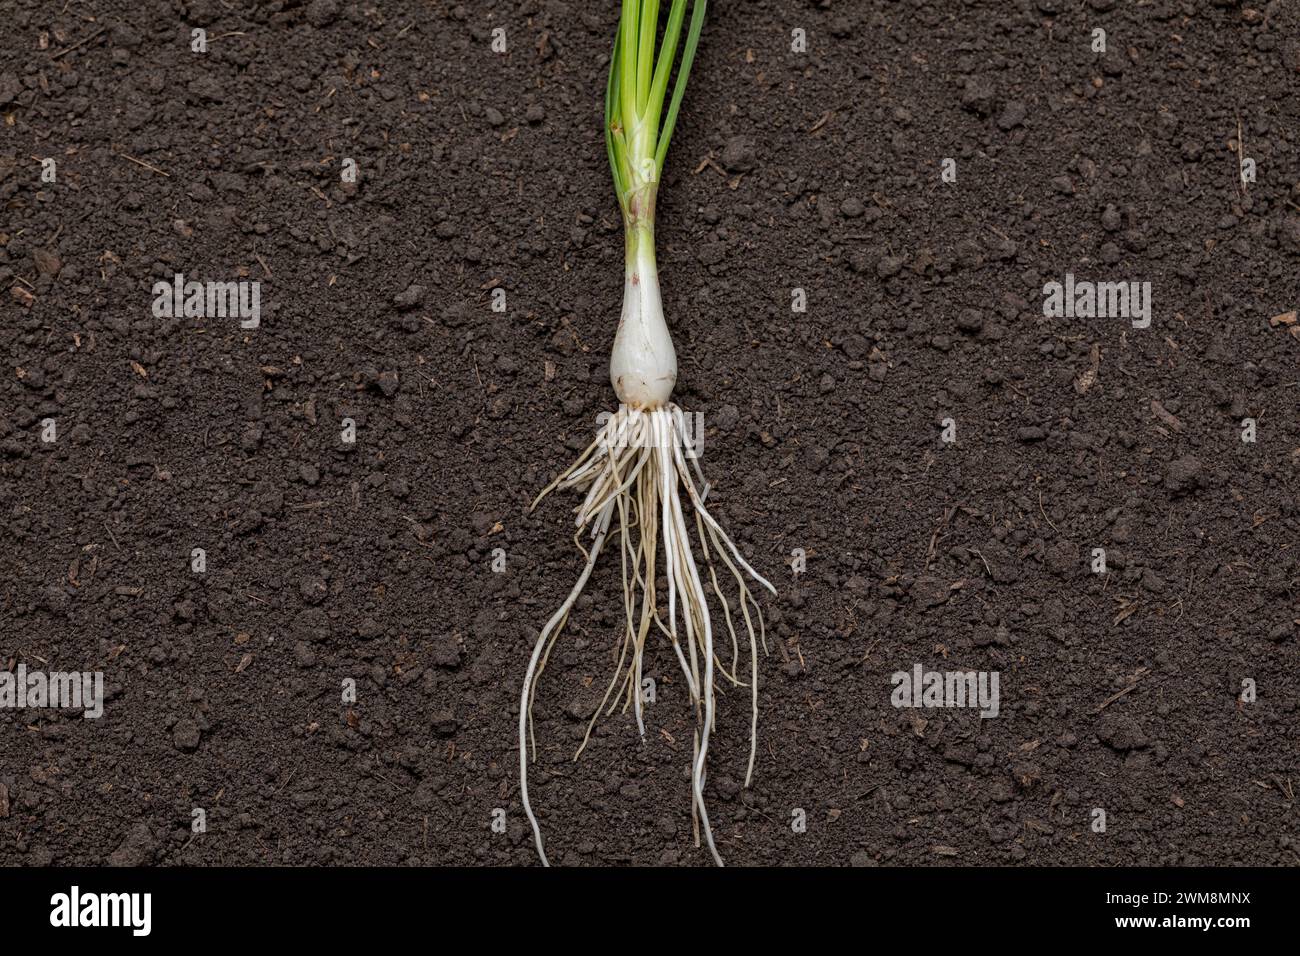 Trasplante de cebolla que muestra el sistema radicular, listo para la siembra de primavera. Jardinería, productos orgánicos y concepto de jardín casero. Foto de stock